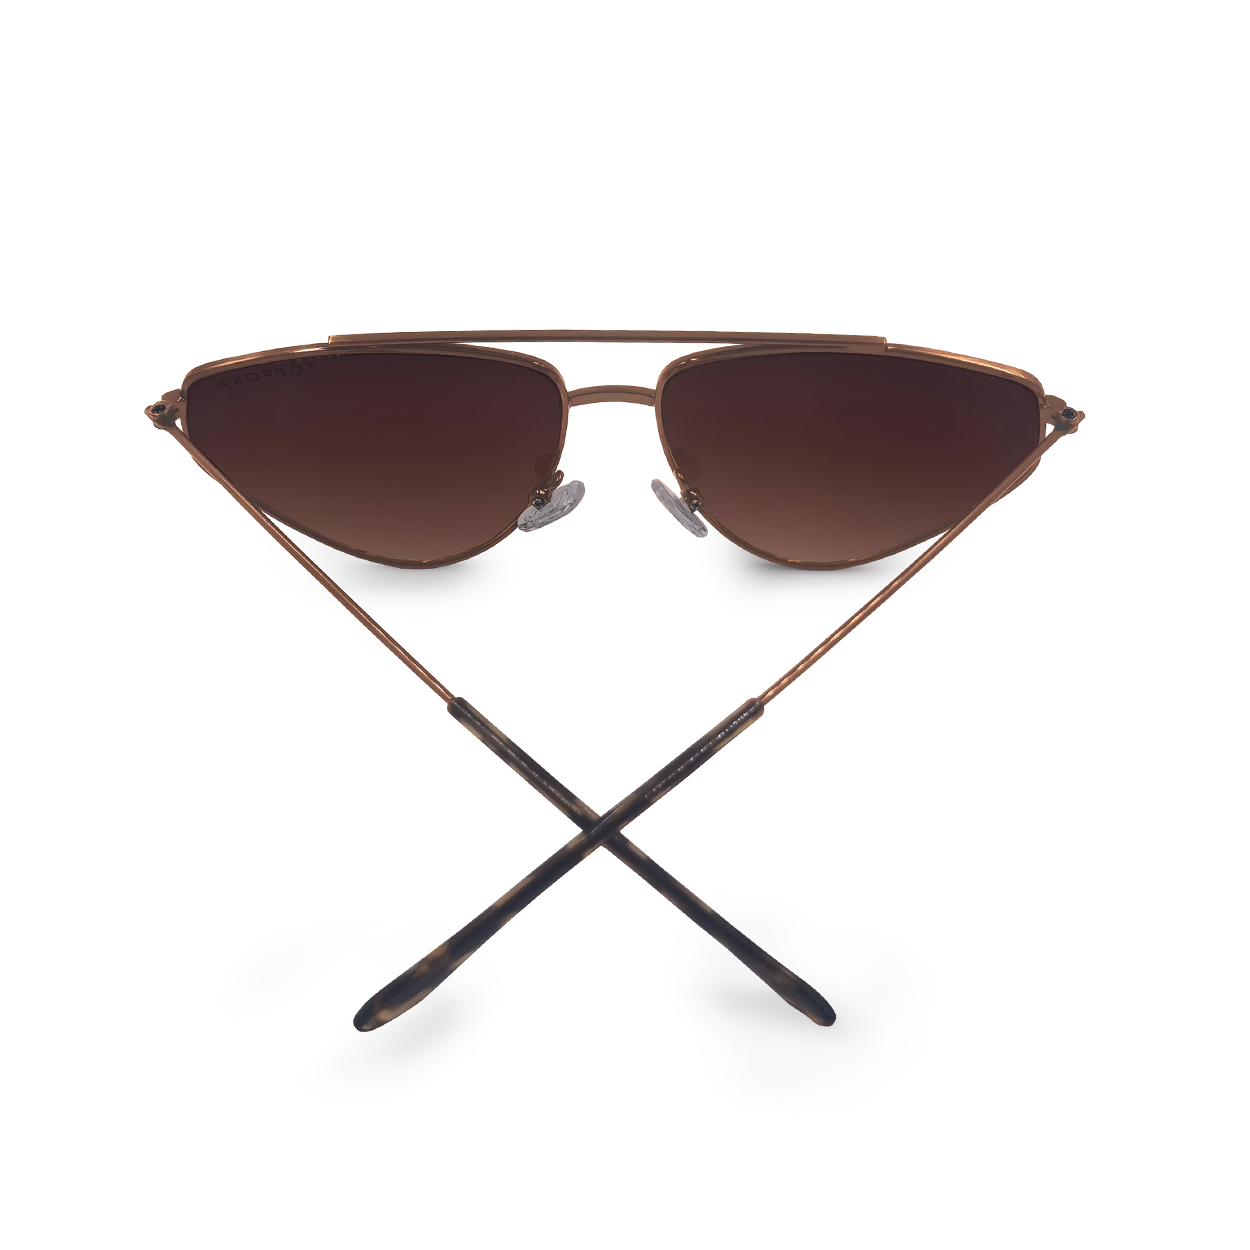 TopFoxx - Hasta La Vista - Brown Cat-Eye Aviator Sunglasses for Women - Unique Aviators - Back Profile